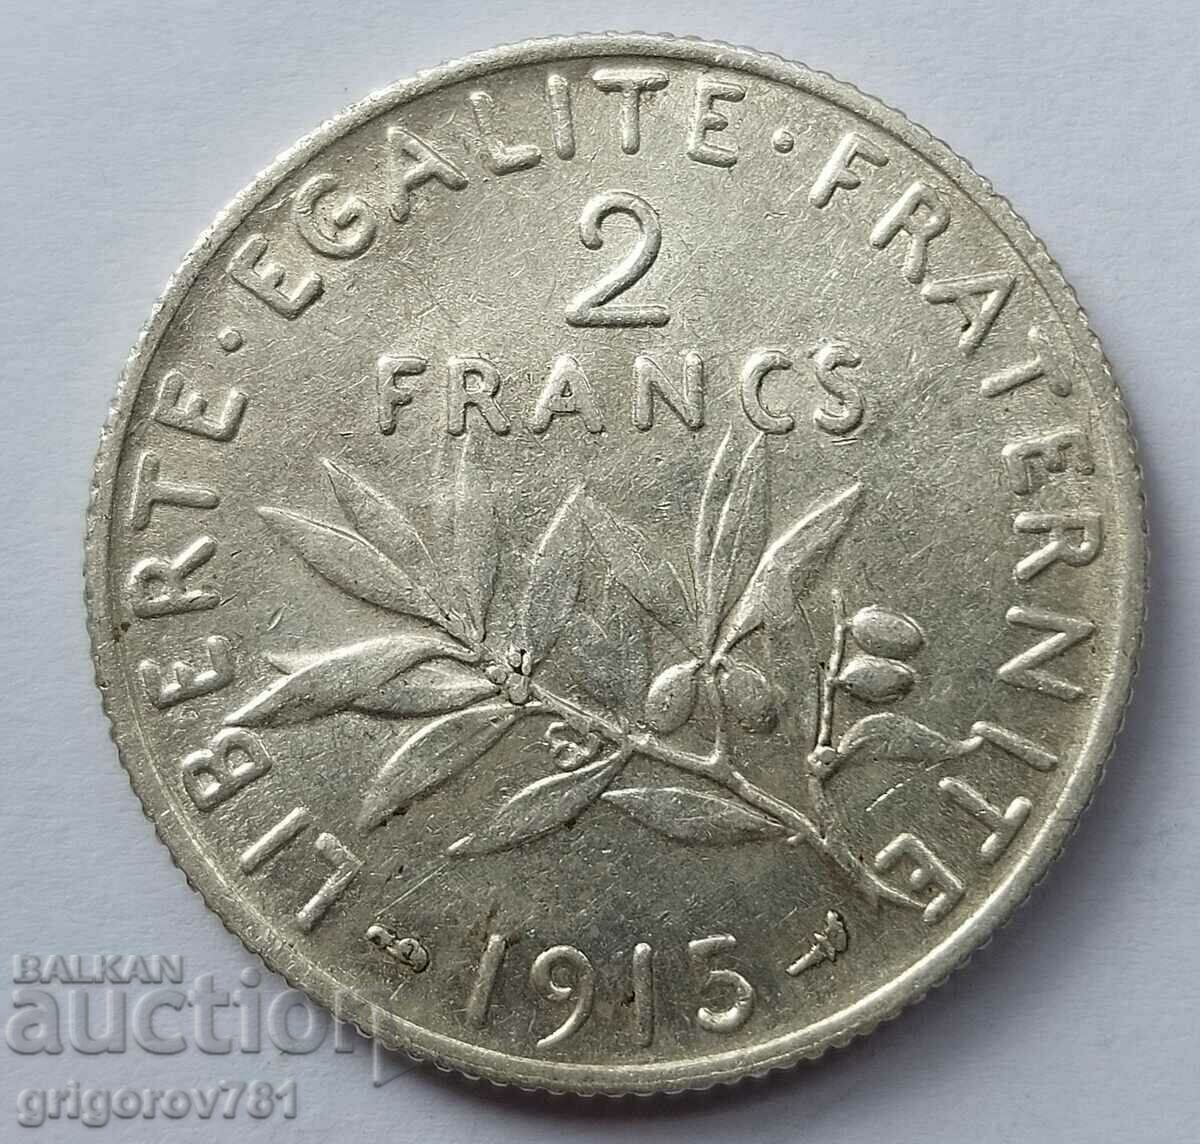 Ασημένιο 2 φράγκα Γαλλία 1915 - ασημένιο νόμισμα №6